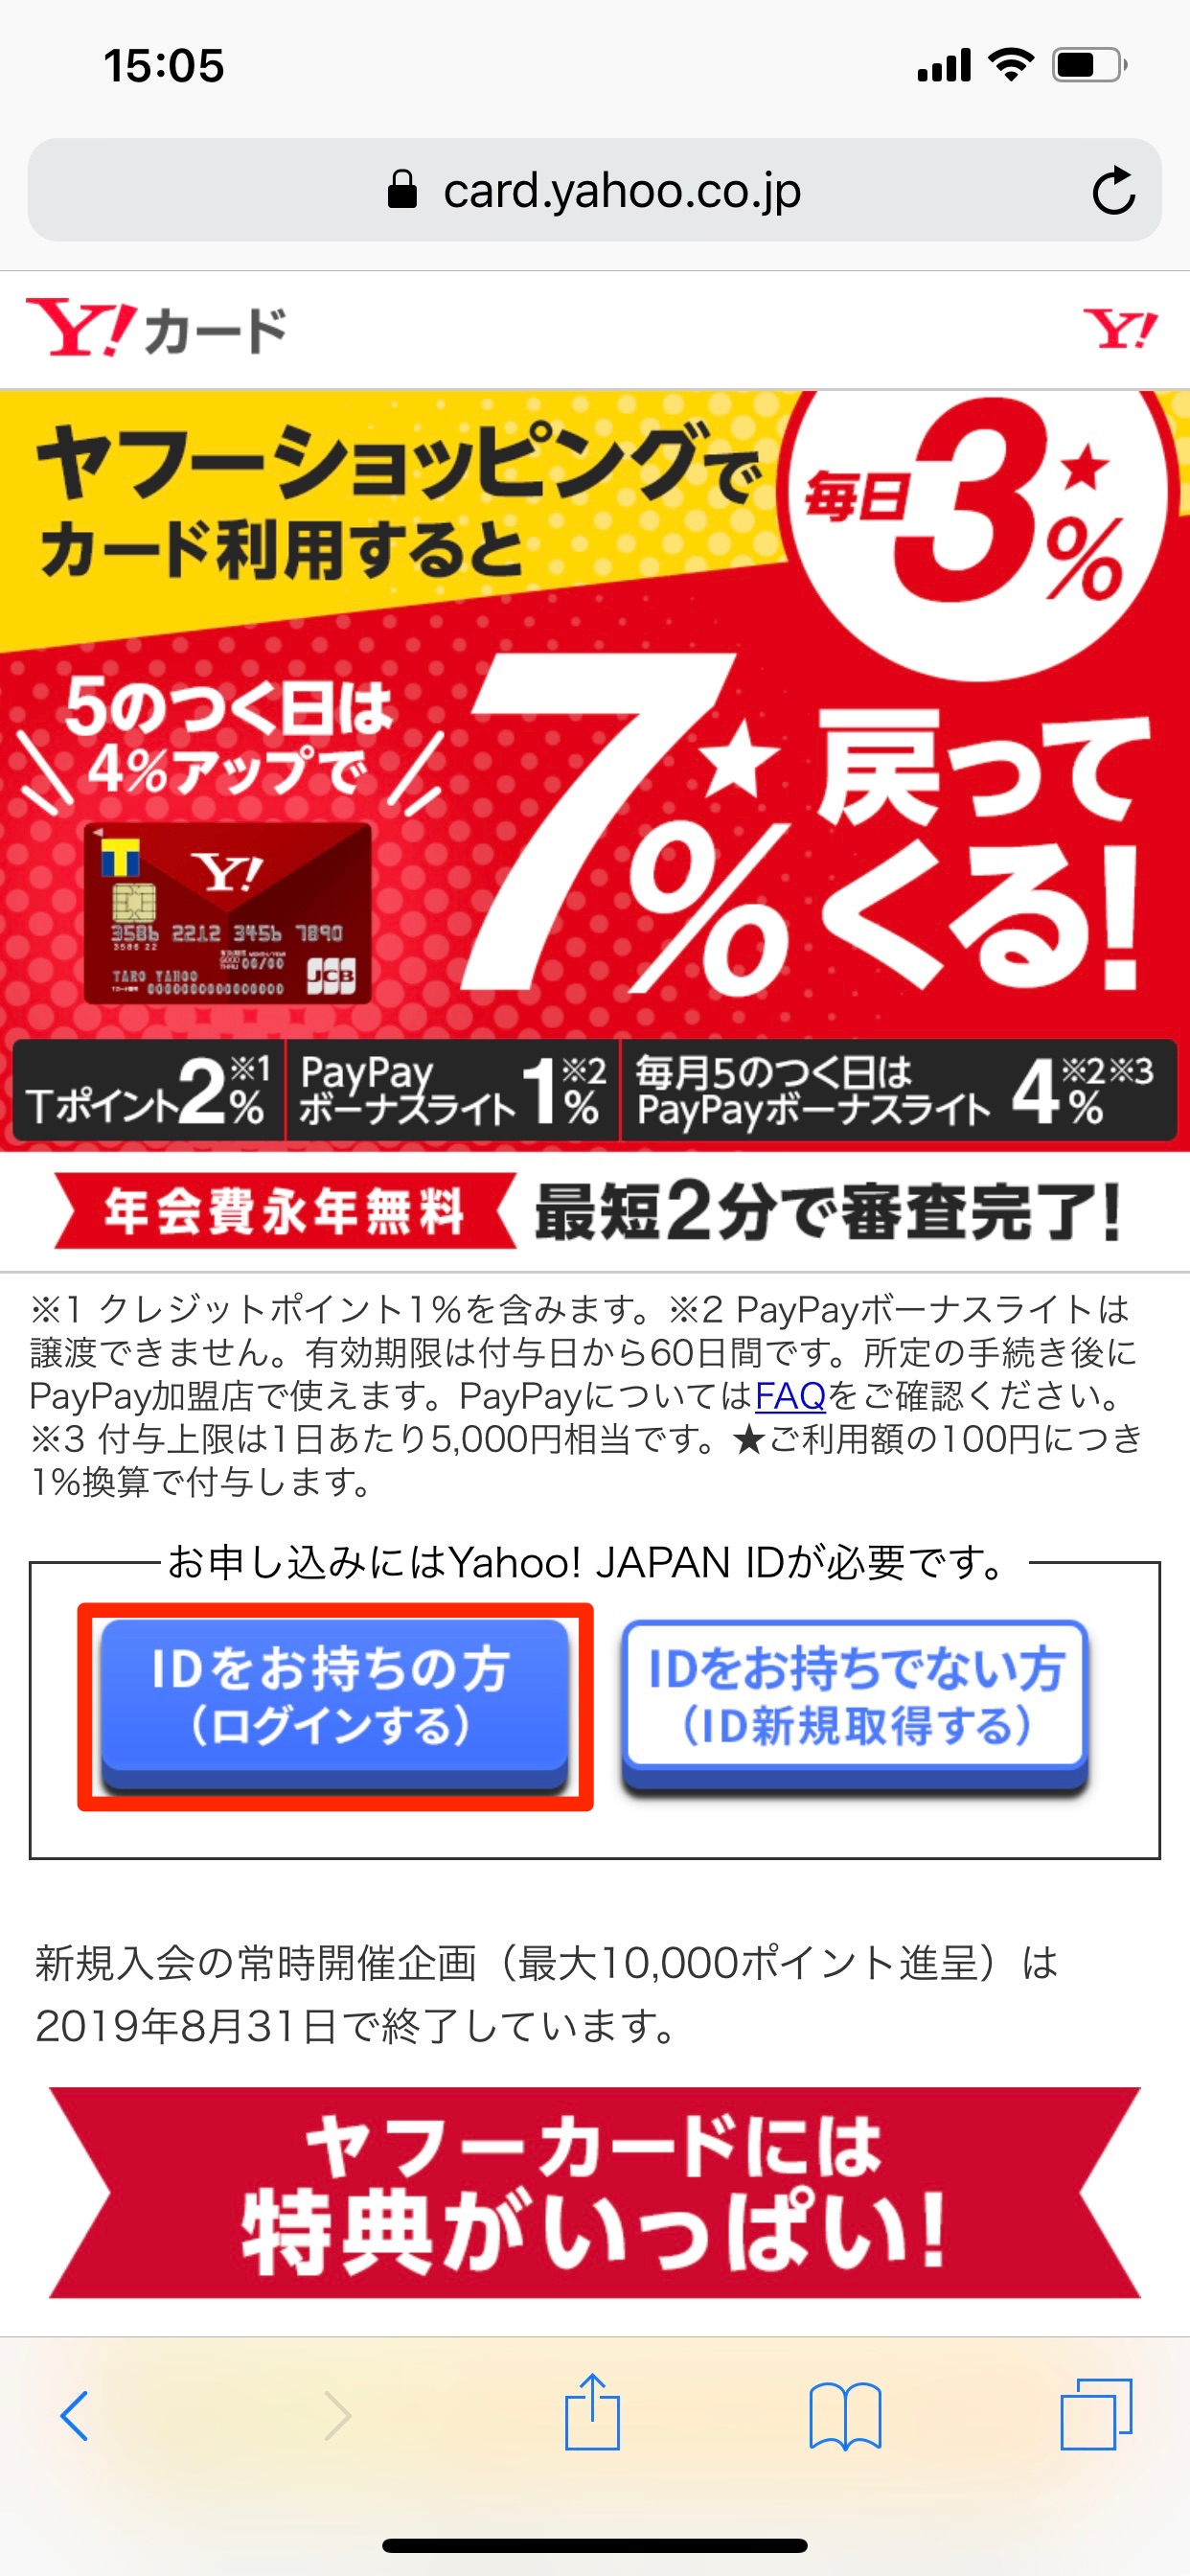 ログイン yahoo カード Yahoo! JAPANカードをご利用の方対象